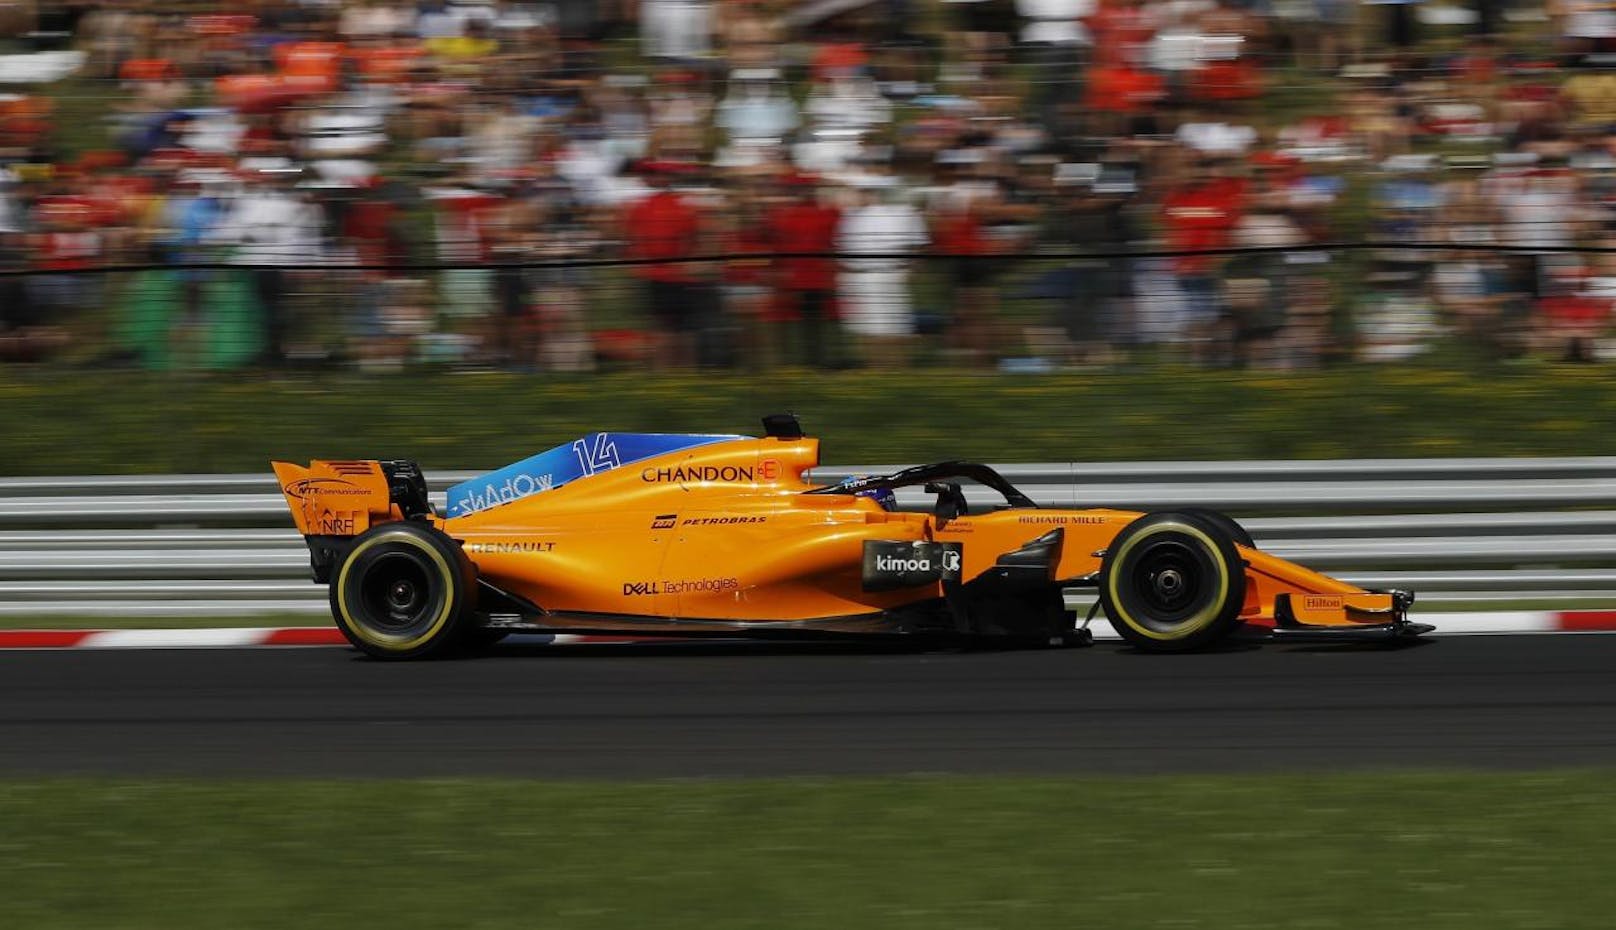 <b>Platz 4
</b>McLaren: 69 Millionen Euro